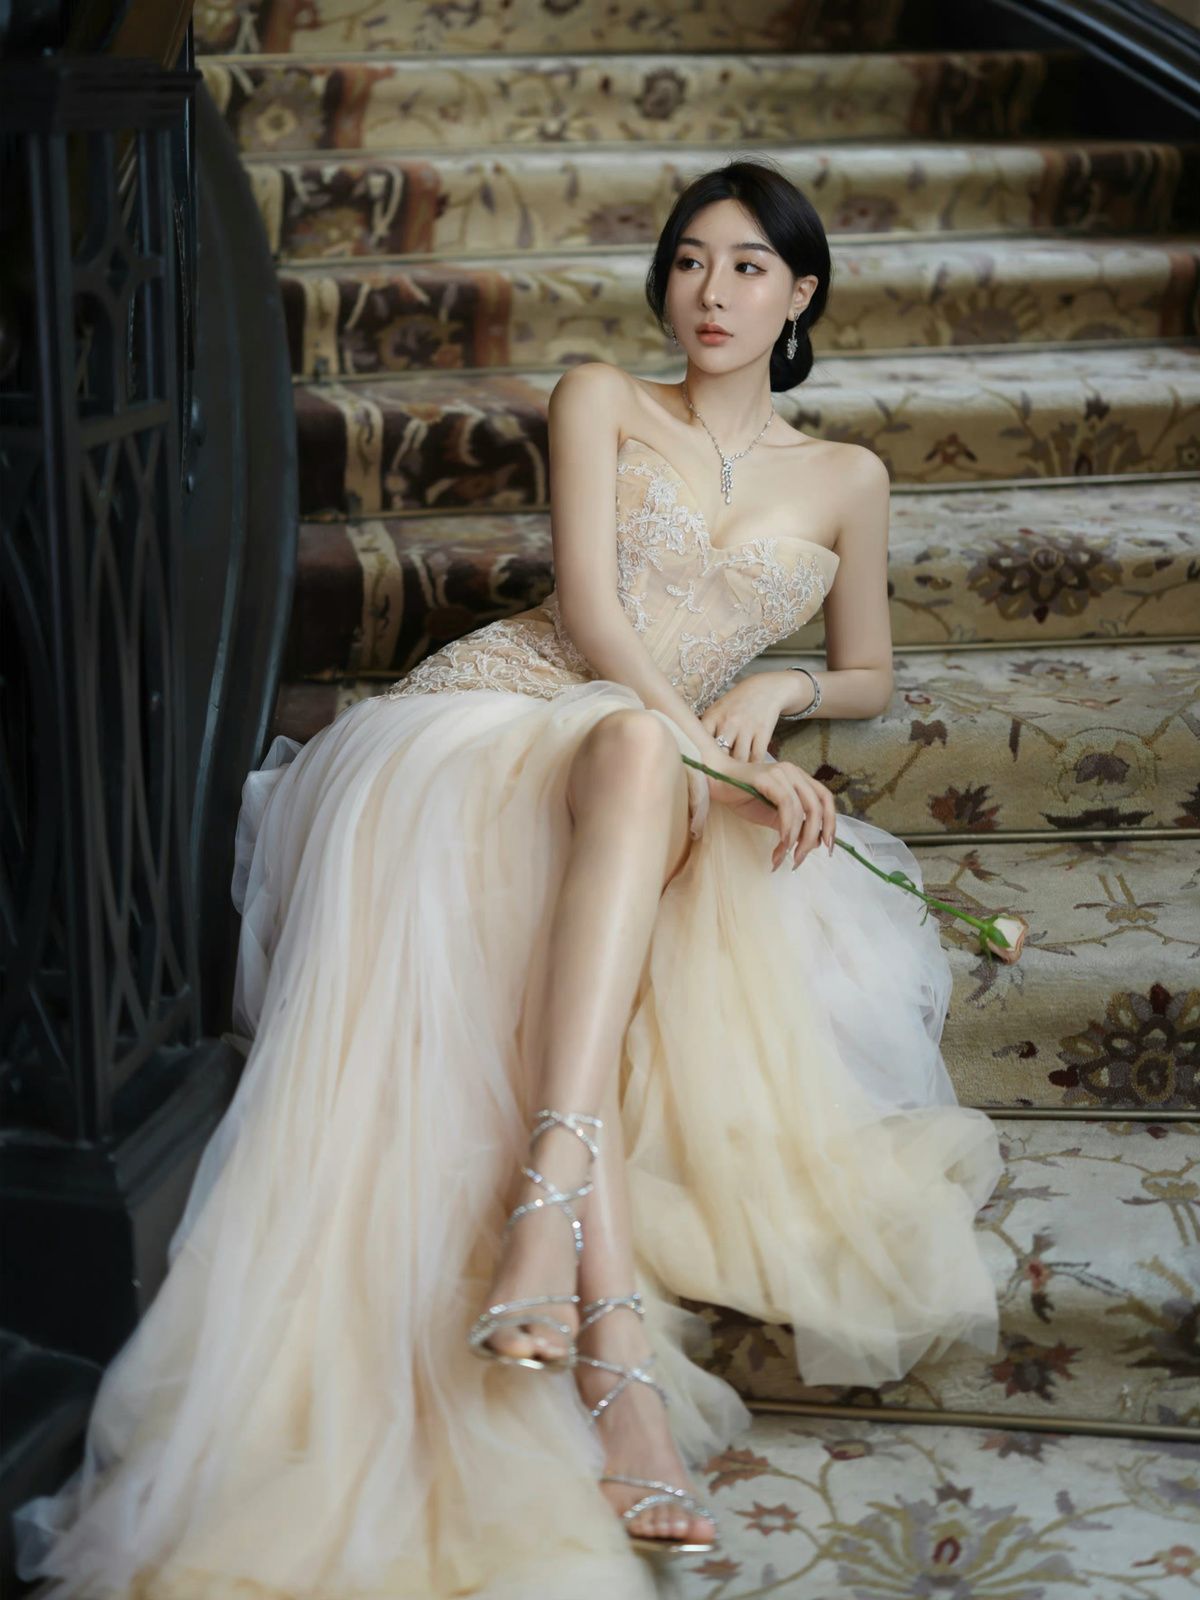 一个穿着婚纱的美女坐在楼梯的台阶上